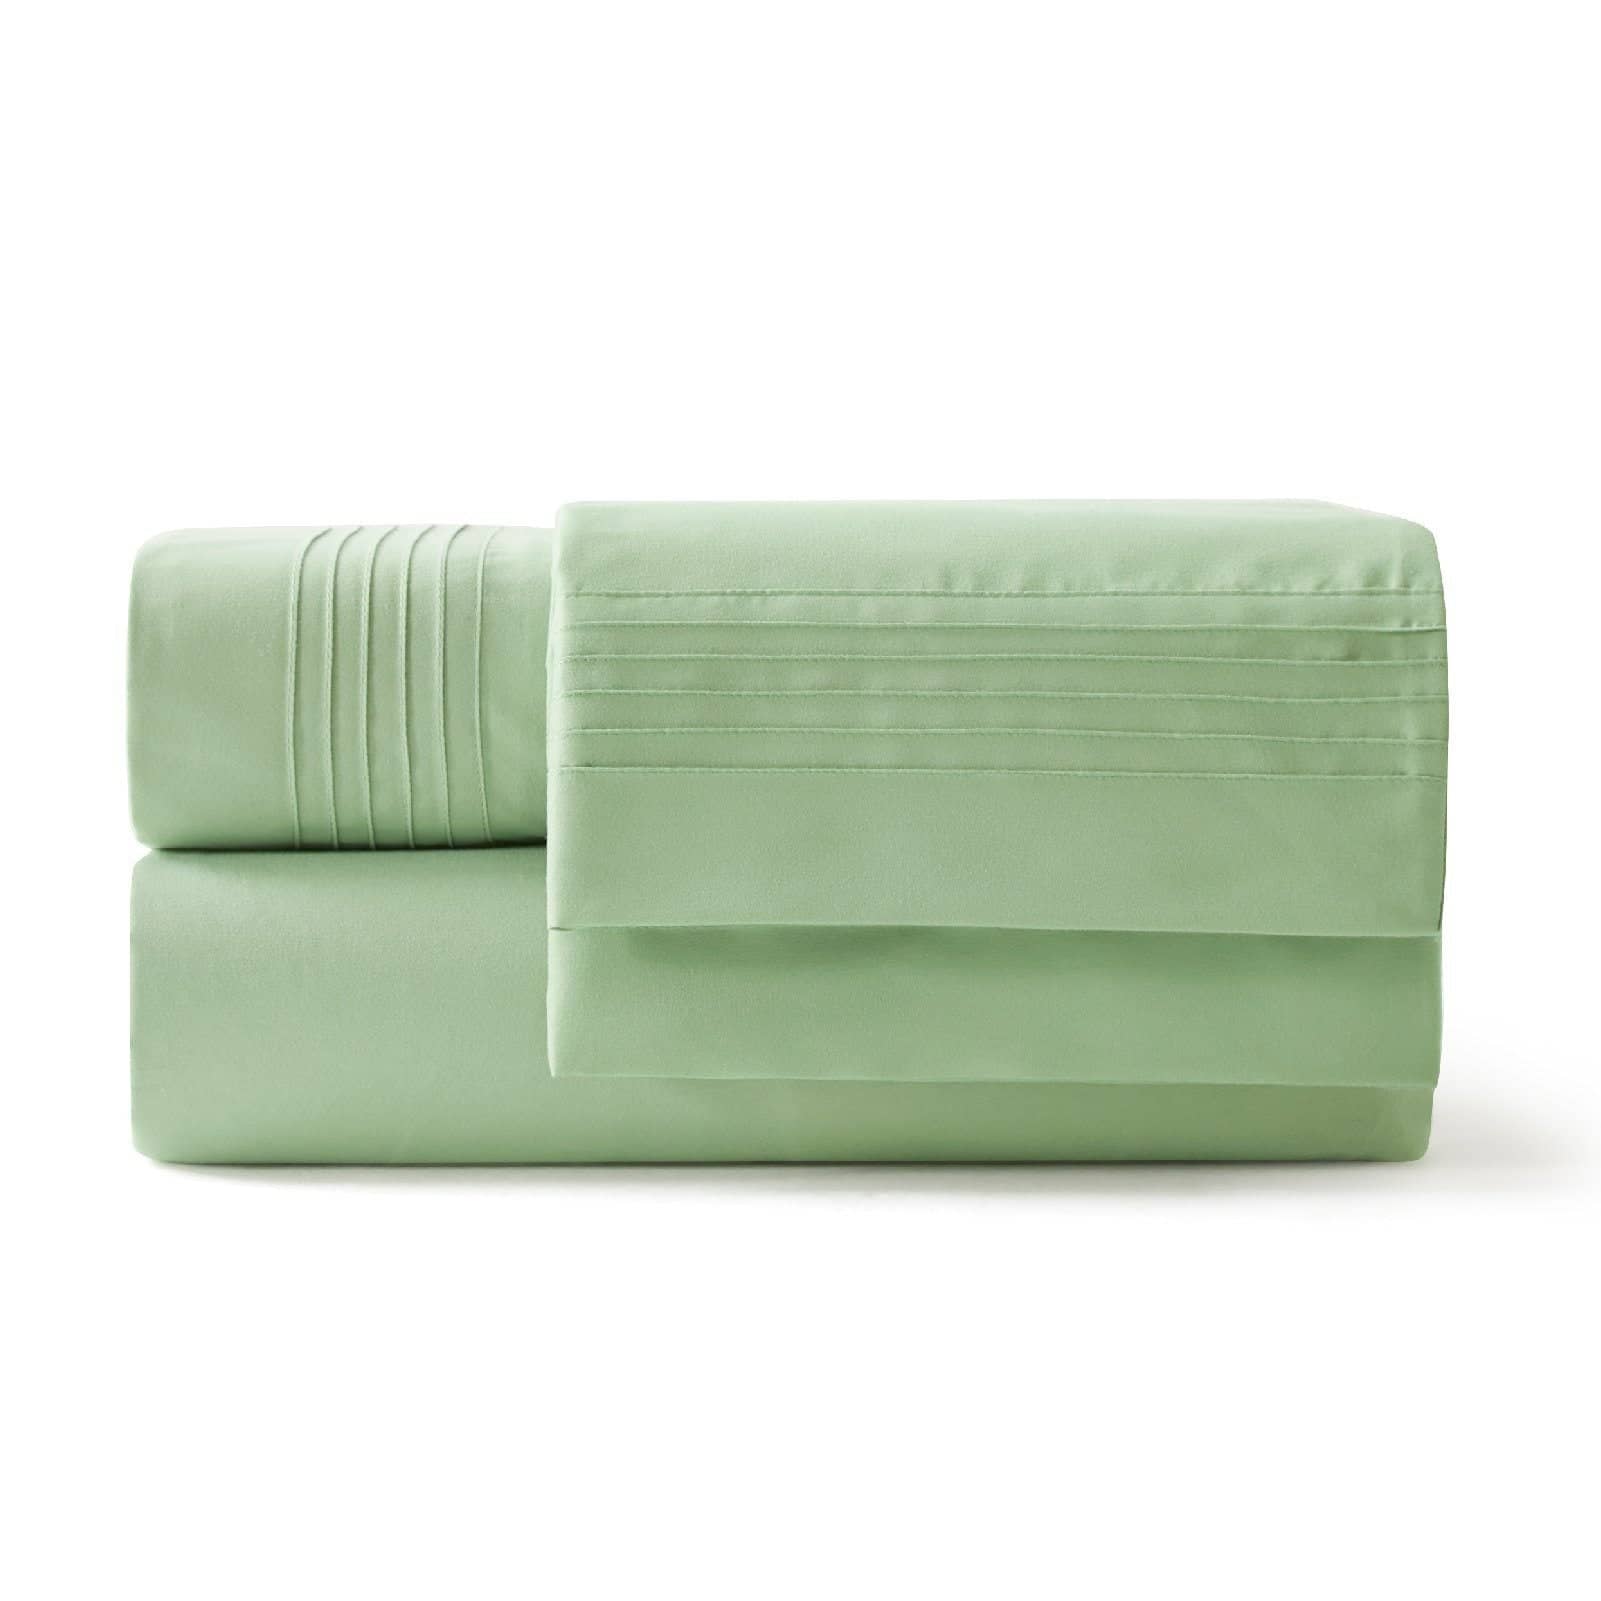 Bedsure | Moisture-Wicking Sheet Set lightgreen skin-friendly